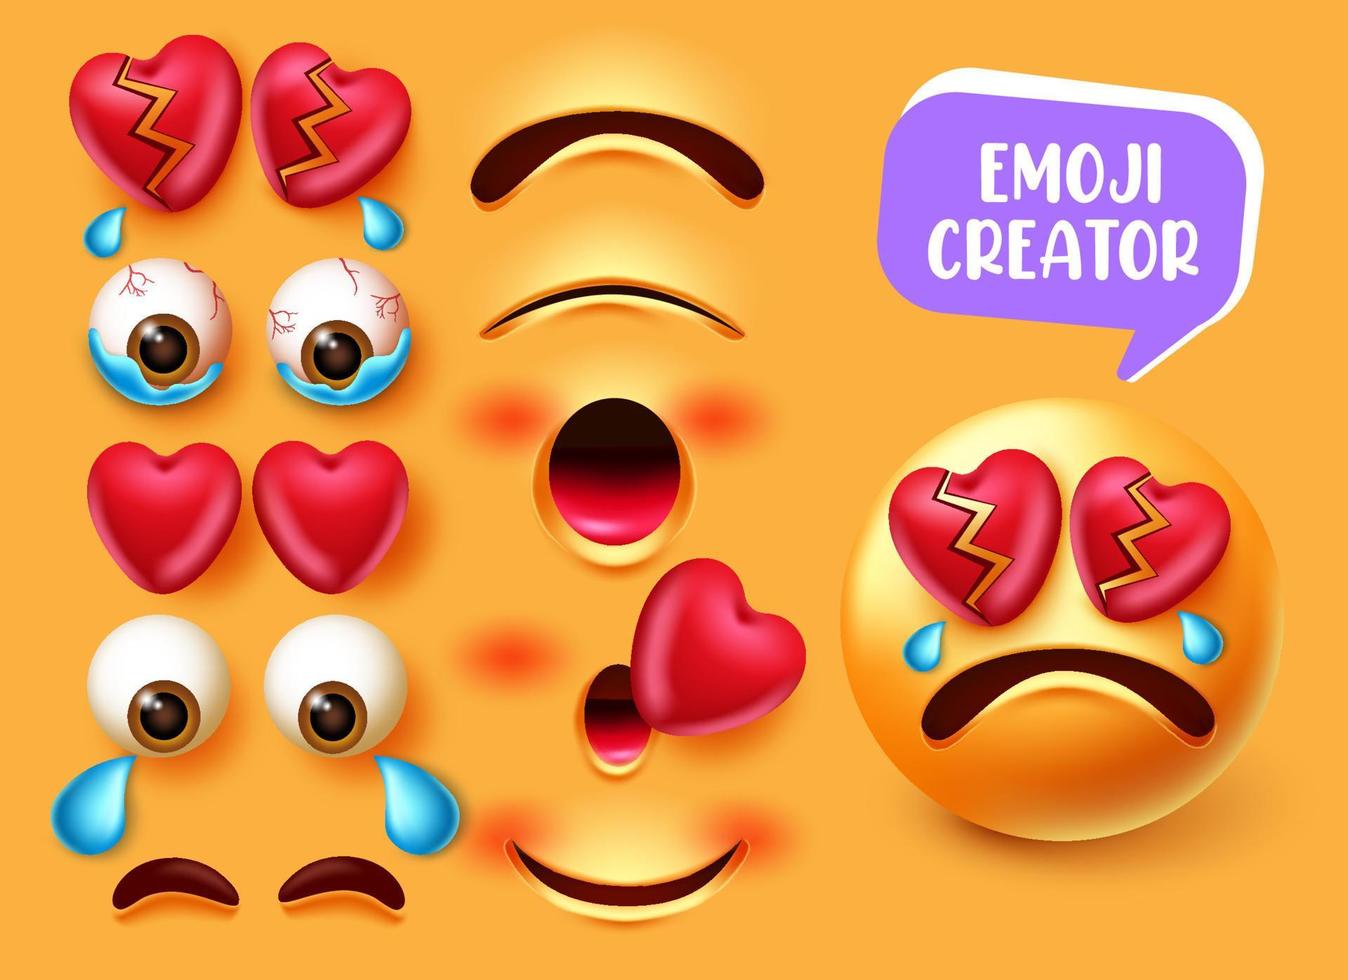 Emoji-Ersteller-Vektor-Set-Design. Emojis 3d in weinendem und gebrochenem Herzen mit bearbeitbaren Augen- und Mundgesichts-Kit-Elementen für die Erstellung von Emoticon-Gesichtsausdrücken. Vektor-Illustration vektor